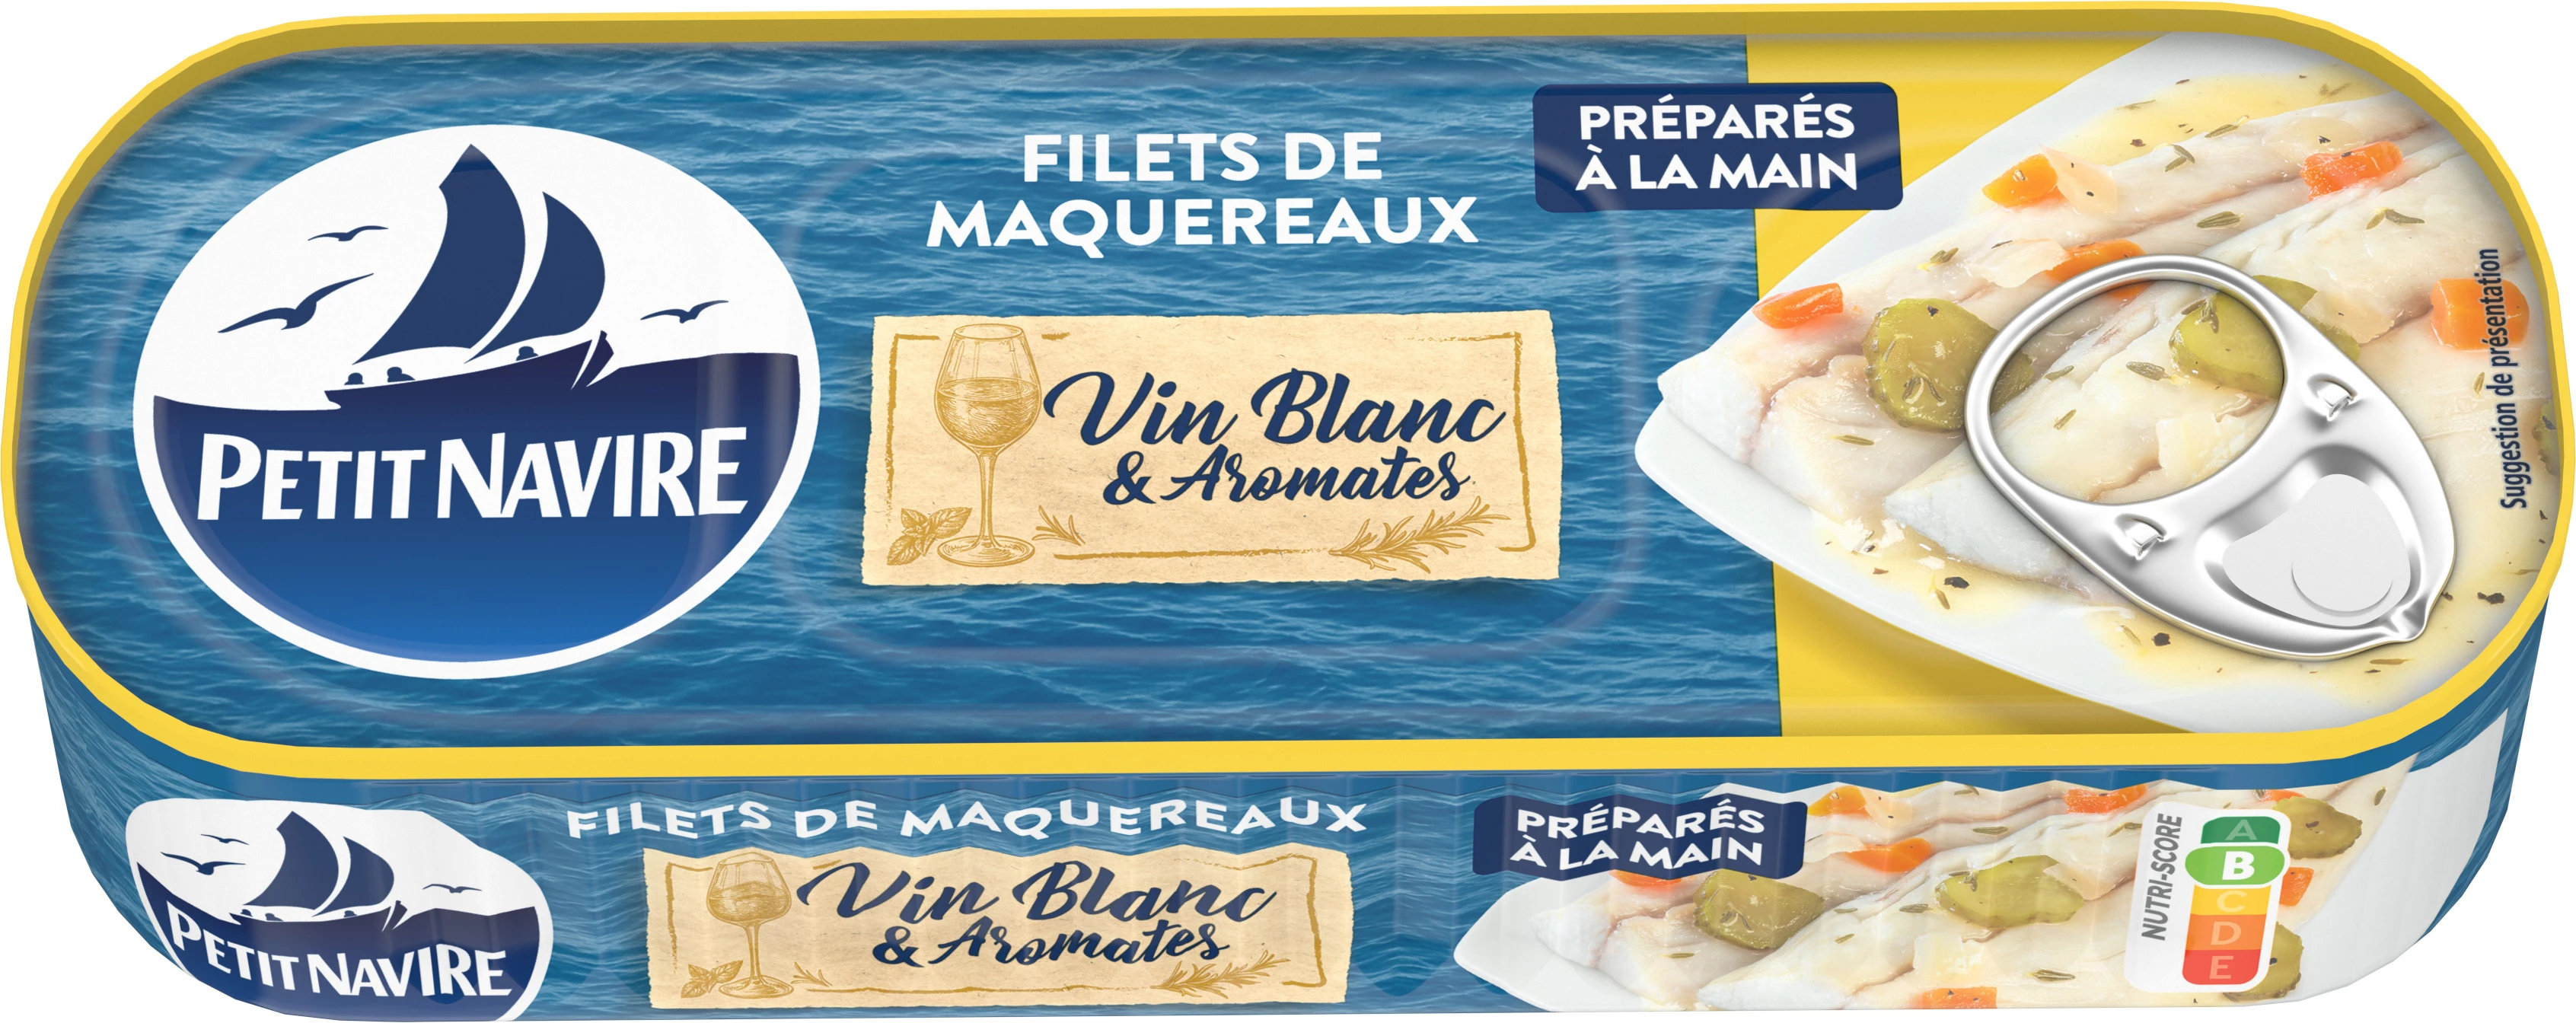 Filet de Maquereaux Vin Blanc Aromates, 175g  - PETIT NAVIRE